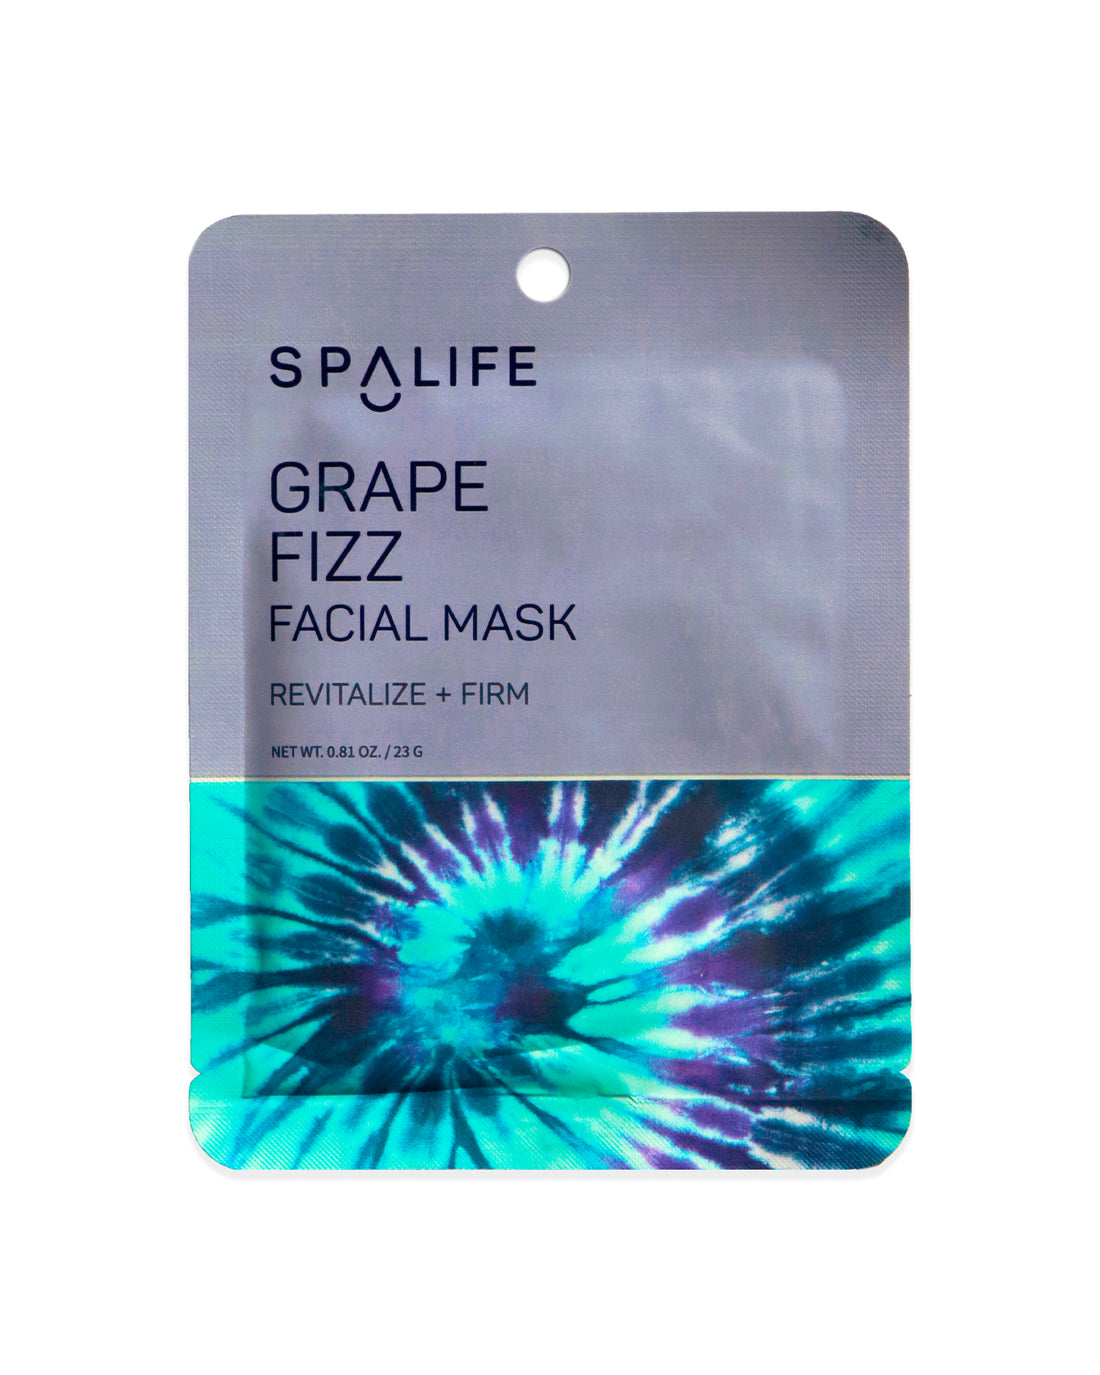 Grape_fizz_facial_mask_packet-197